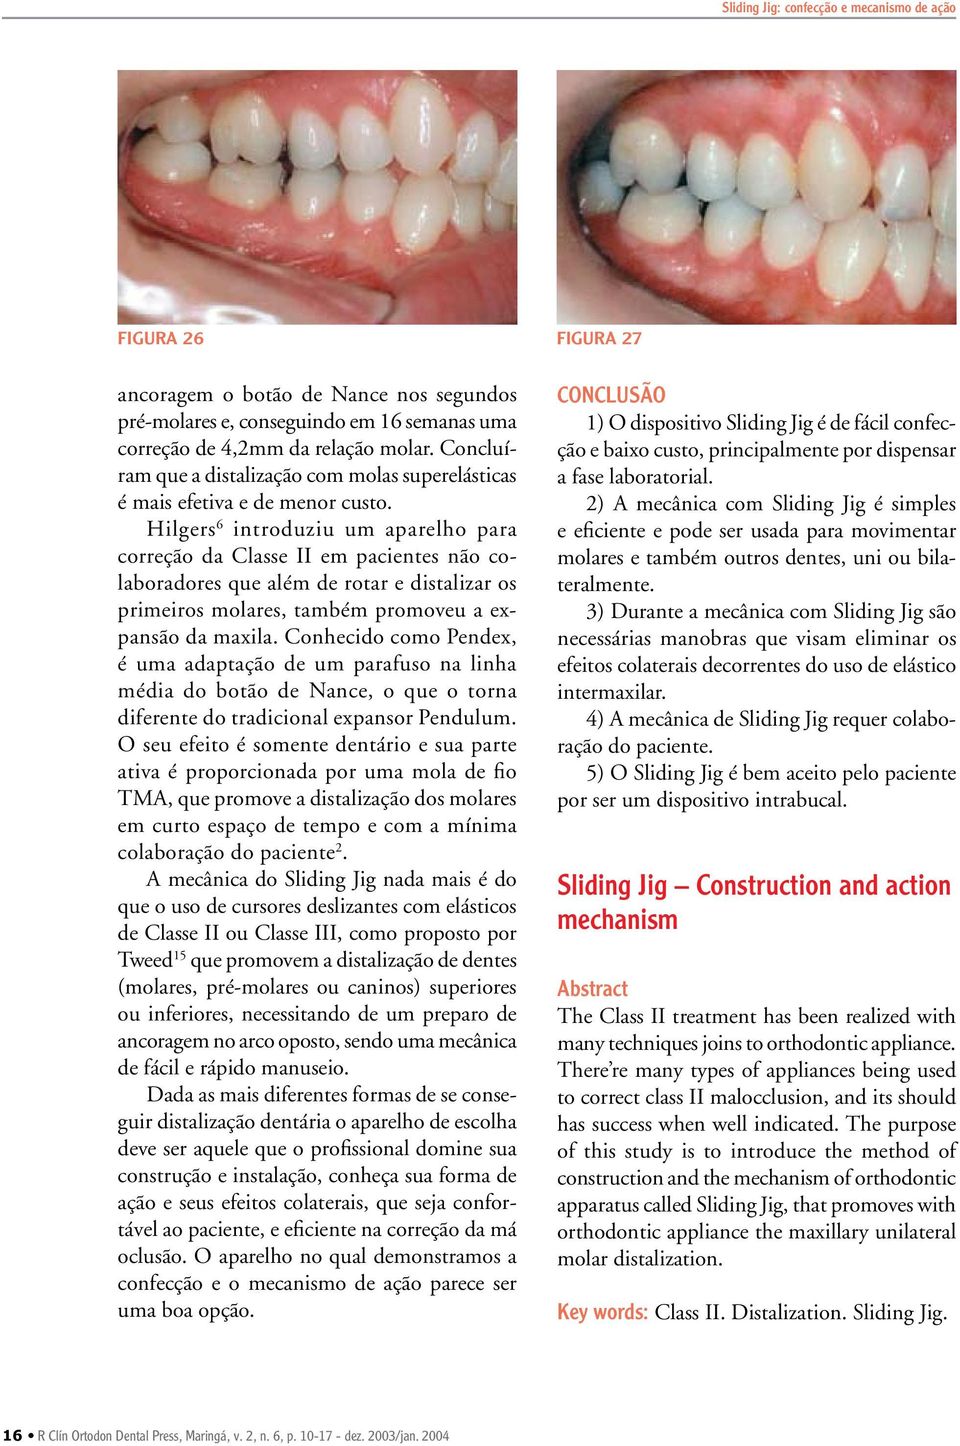 Hilgers 6 introduziu um aparelho para correção da Classe II em pacientes não colaboradores que além de rotar e distalizar os primeiros molares, também promoveu a expansão da maxila.